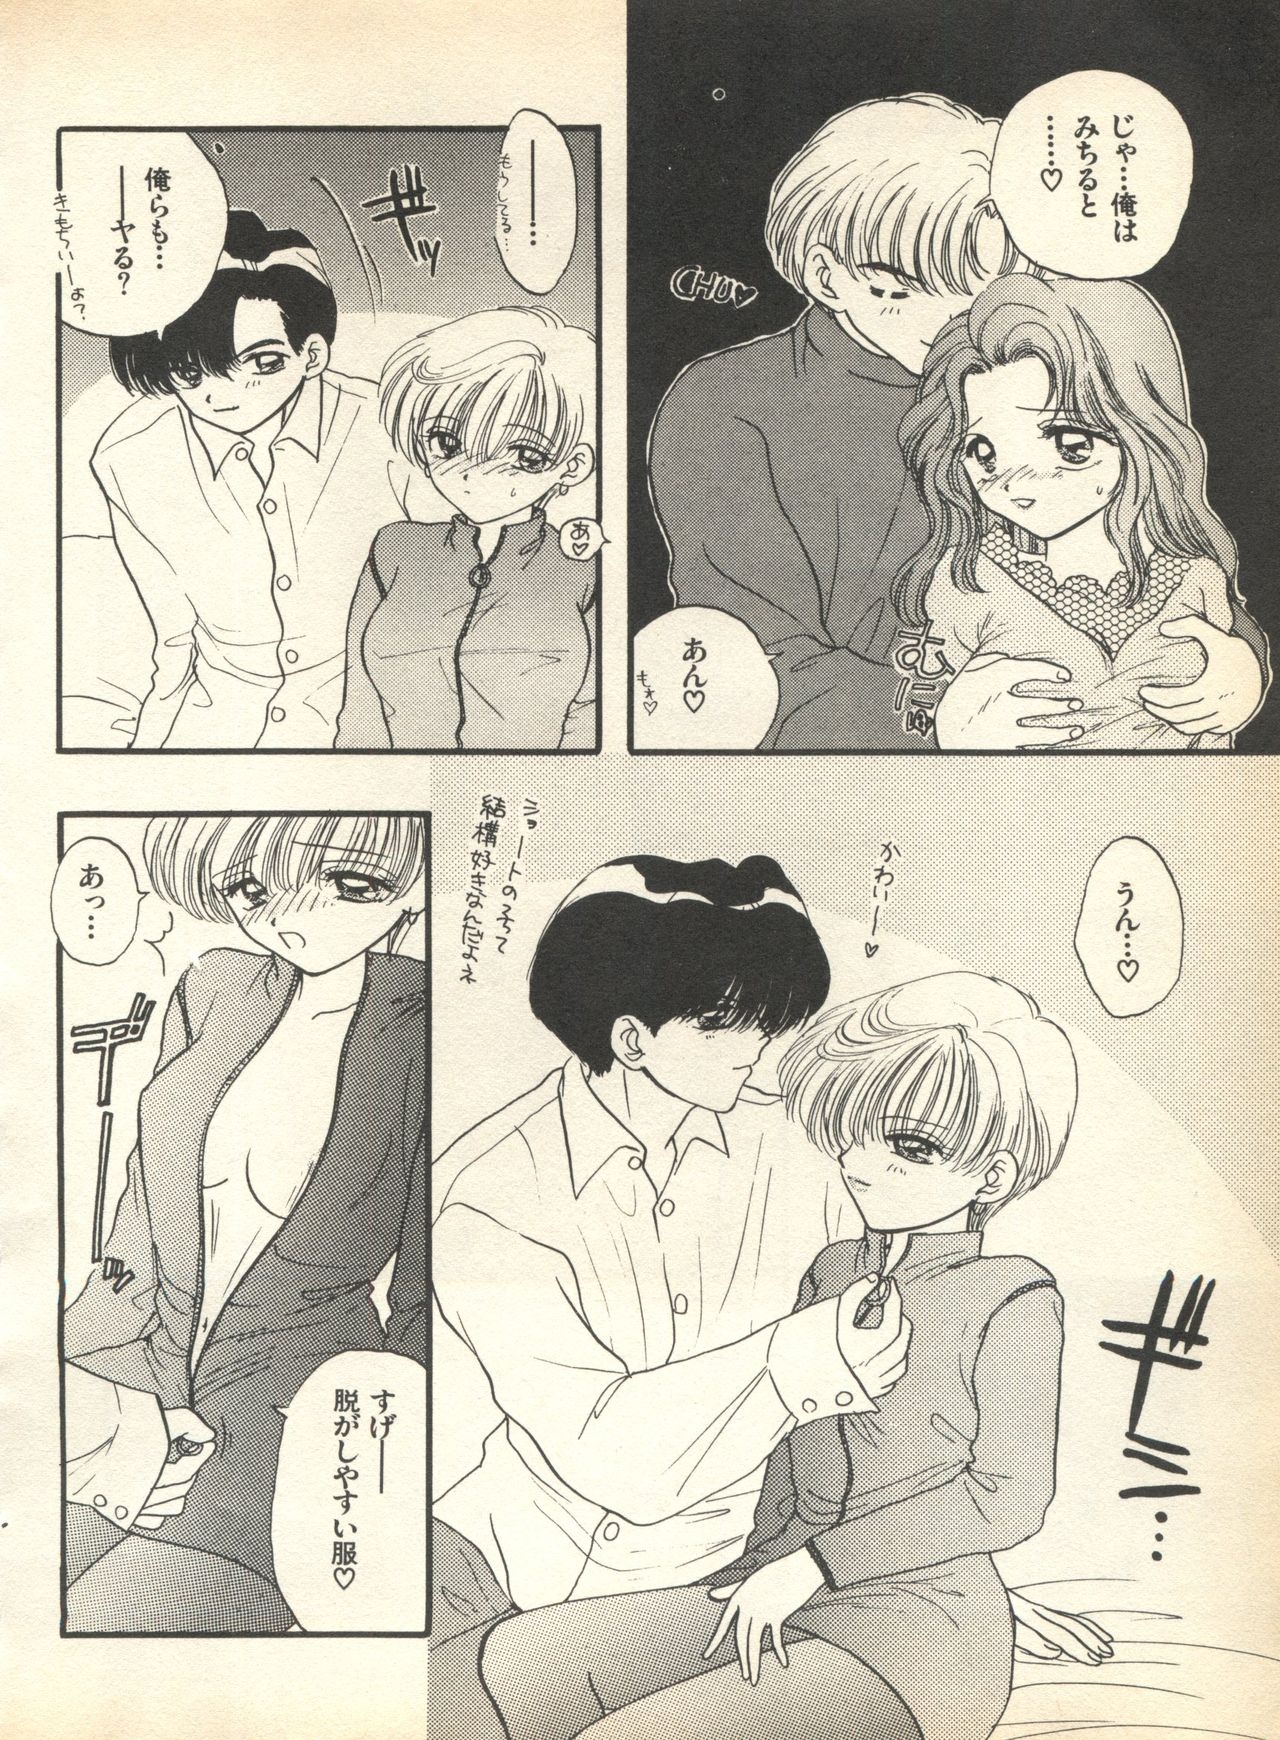 [Anthology] Lunatic Party 7 (Bishoujo Senshi Sailor Moon) 57